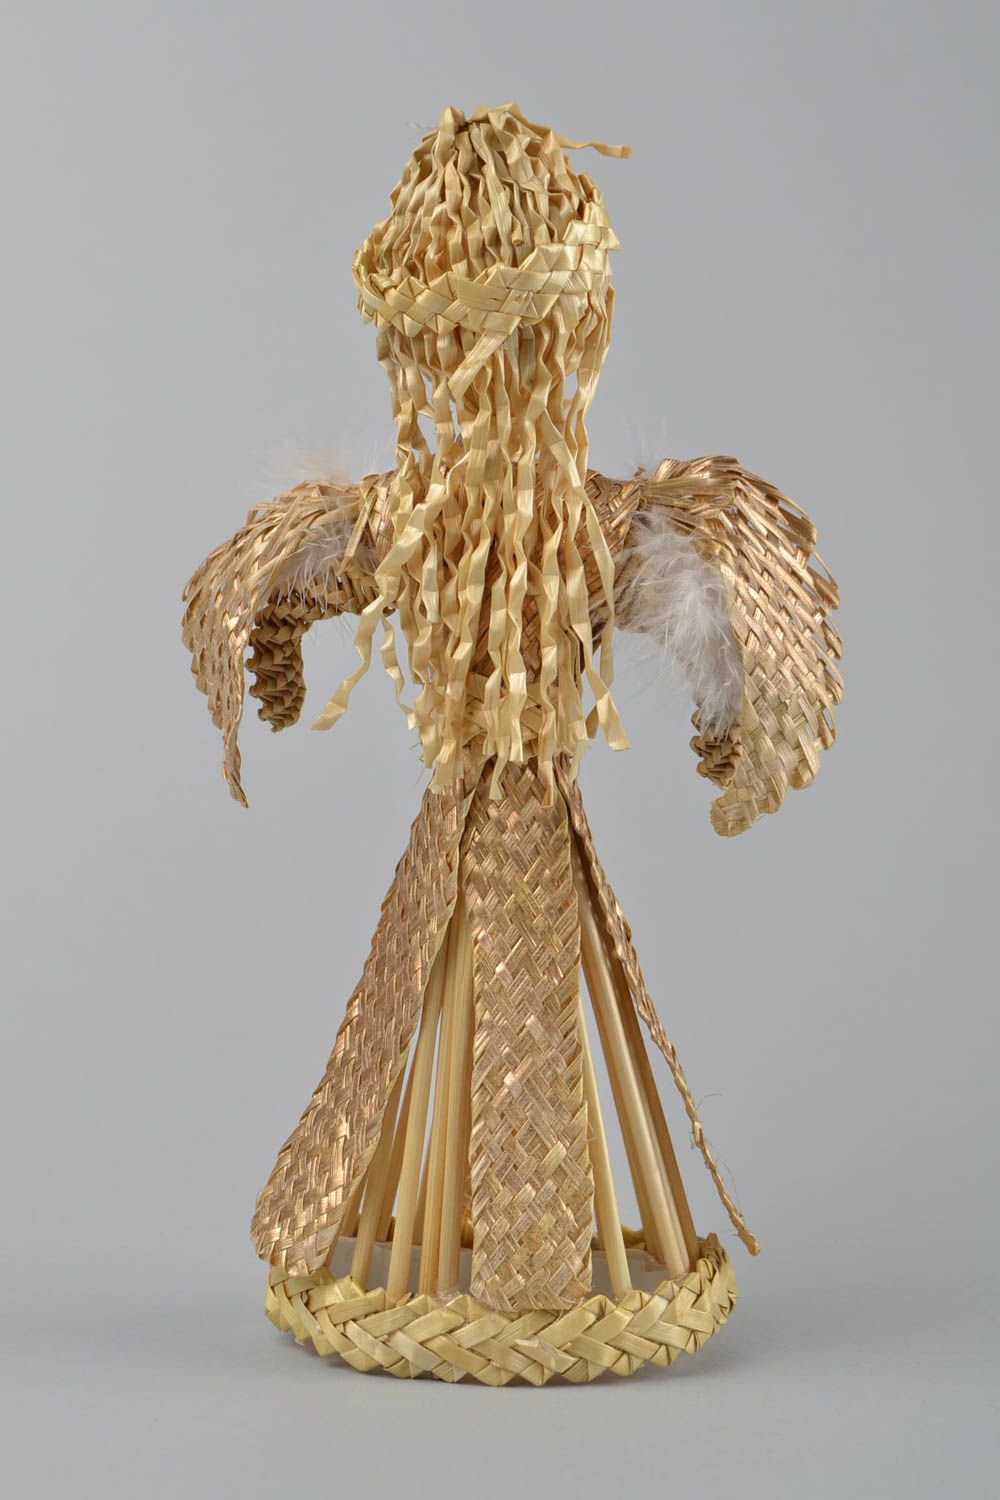 Figurine d'ange gardien faite main tressée de paille pour orner l'intérieur photo 4